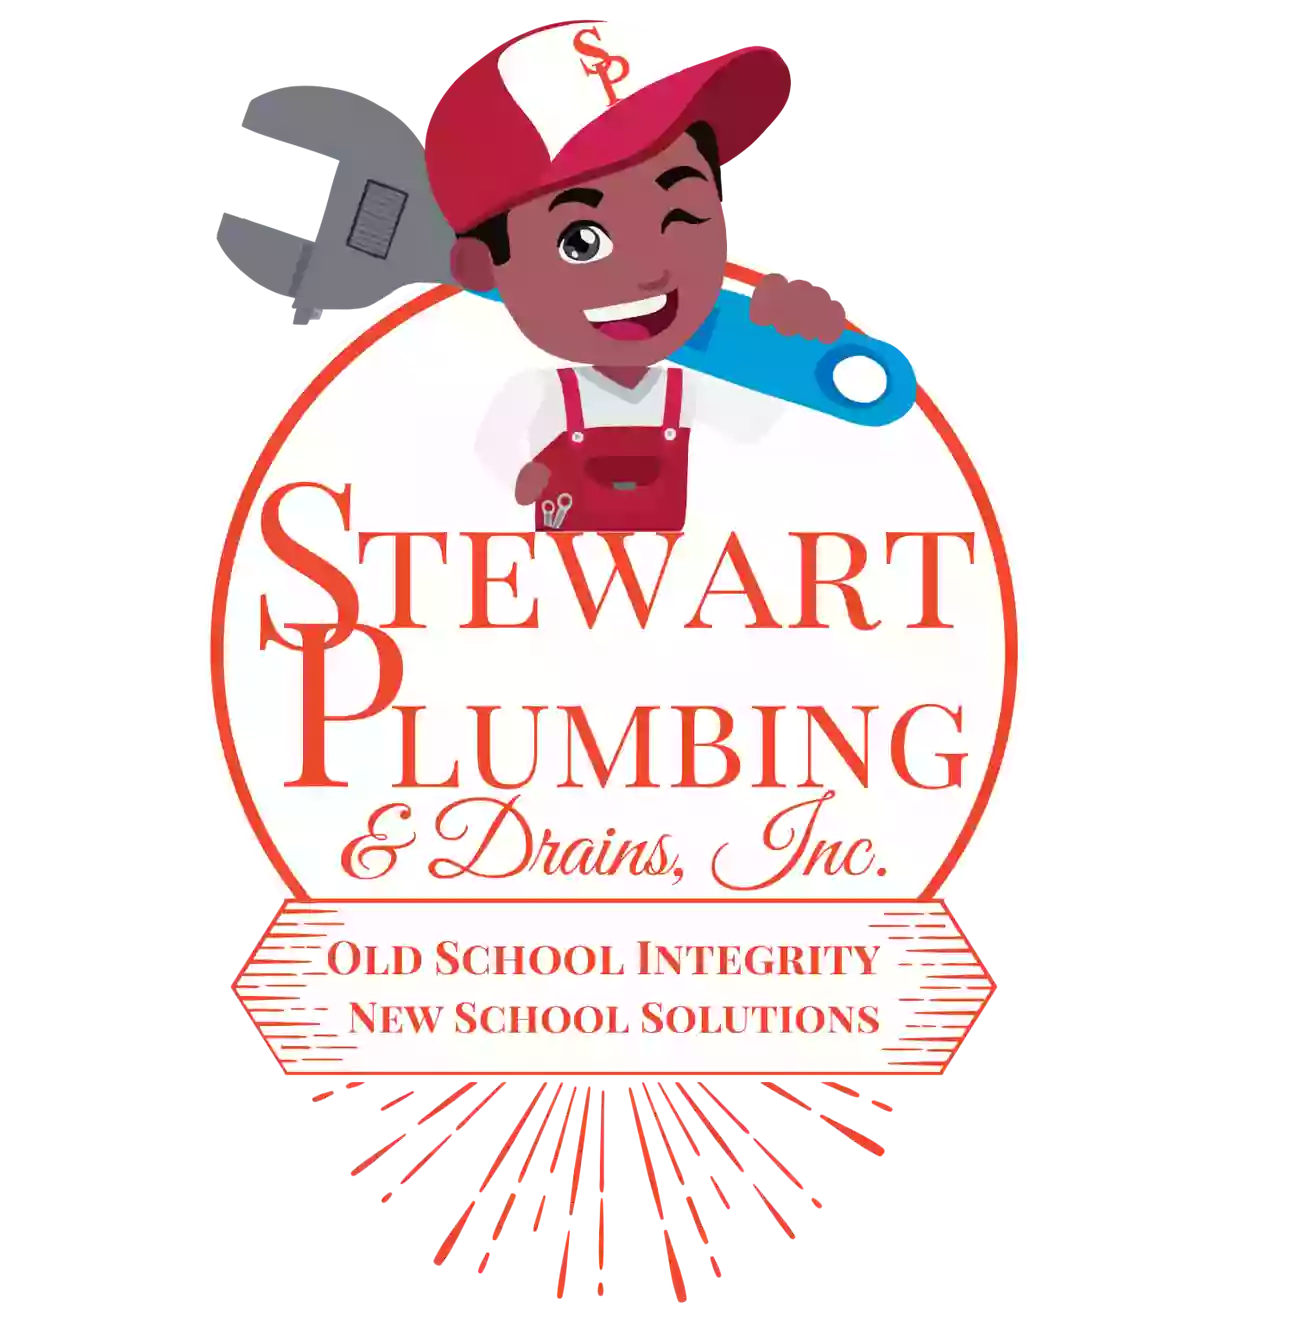 Stewart Plumbing & Drains, Inc